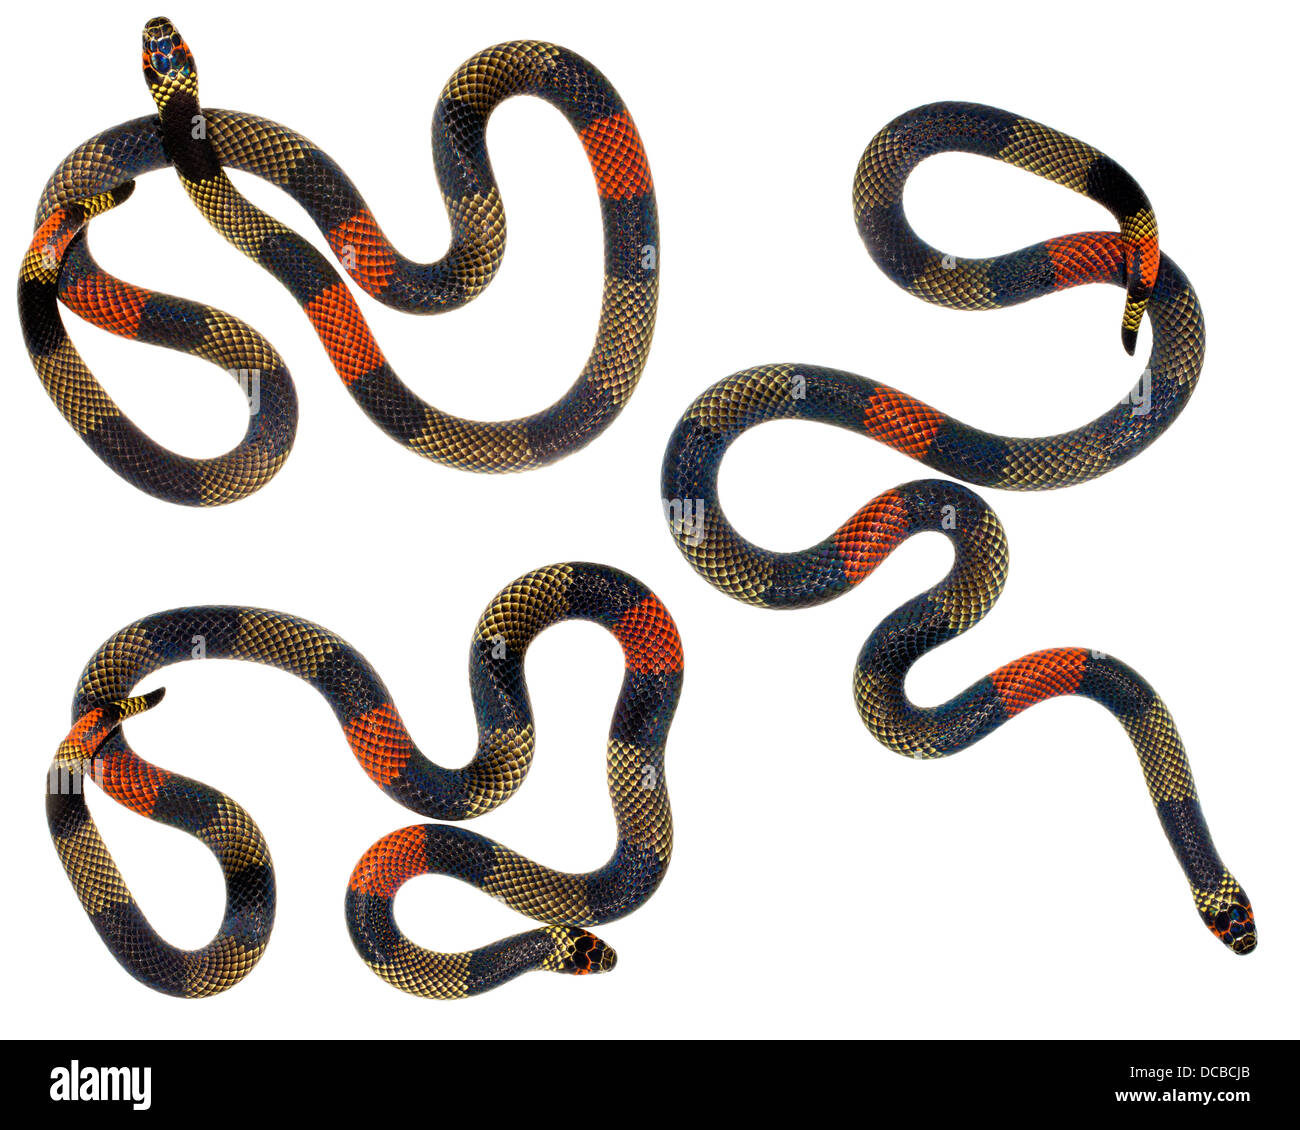 Amazzonico Serpente corallo (Micrurus spixii obscurus). Un serpente velenoso dall'Amazzonia ecuadoriana. Foto Stock